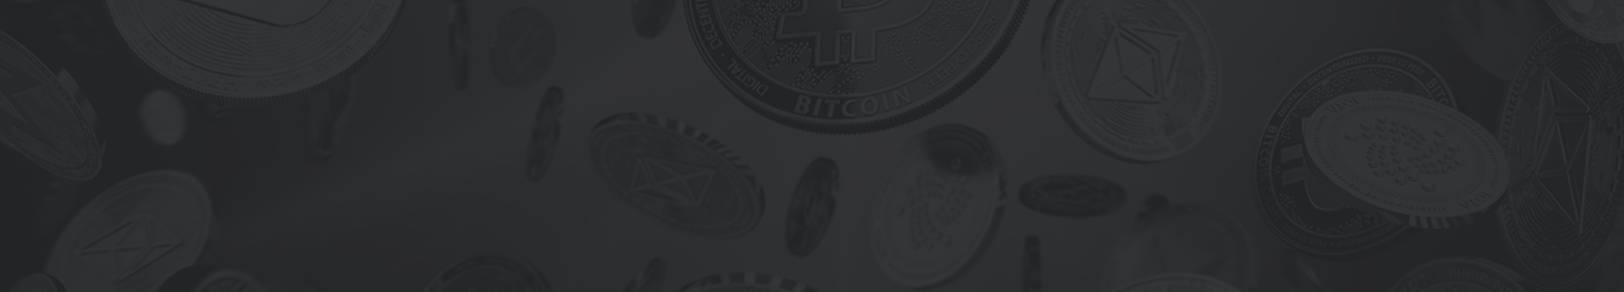 Bitcoin Machine - لم تنضم بعد إلى Bitcoin Machine؟